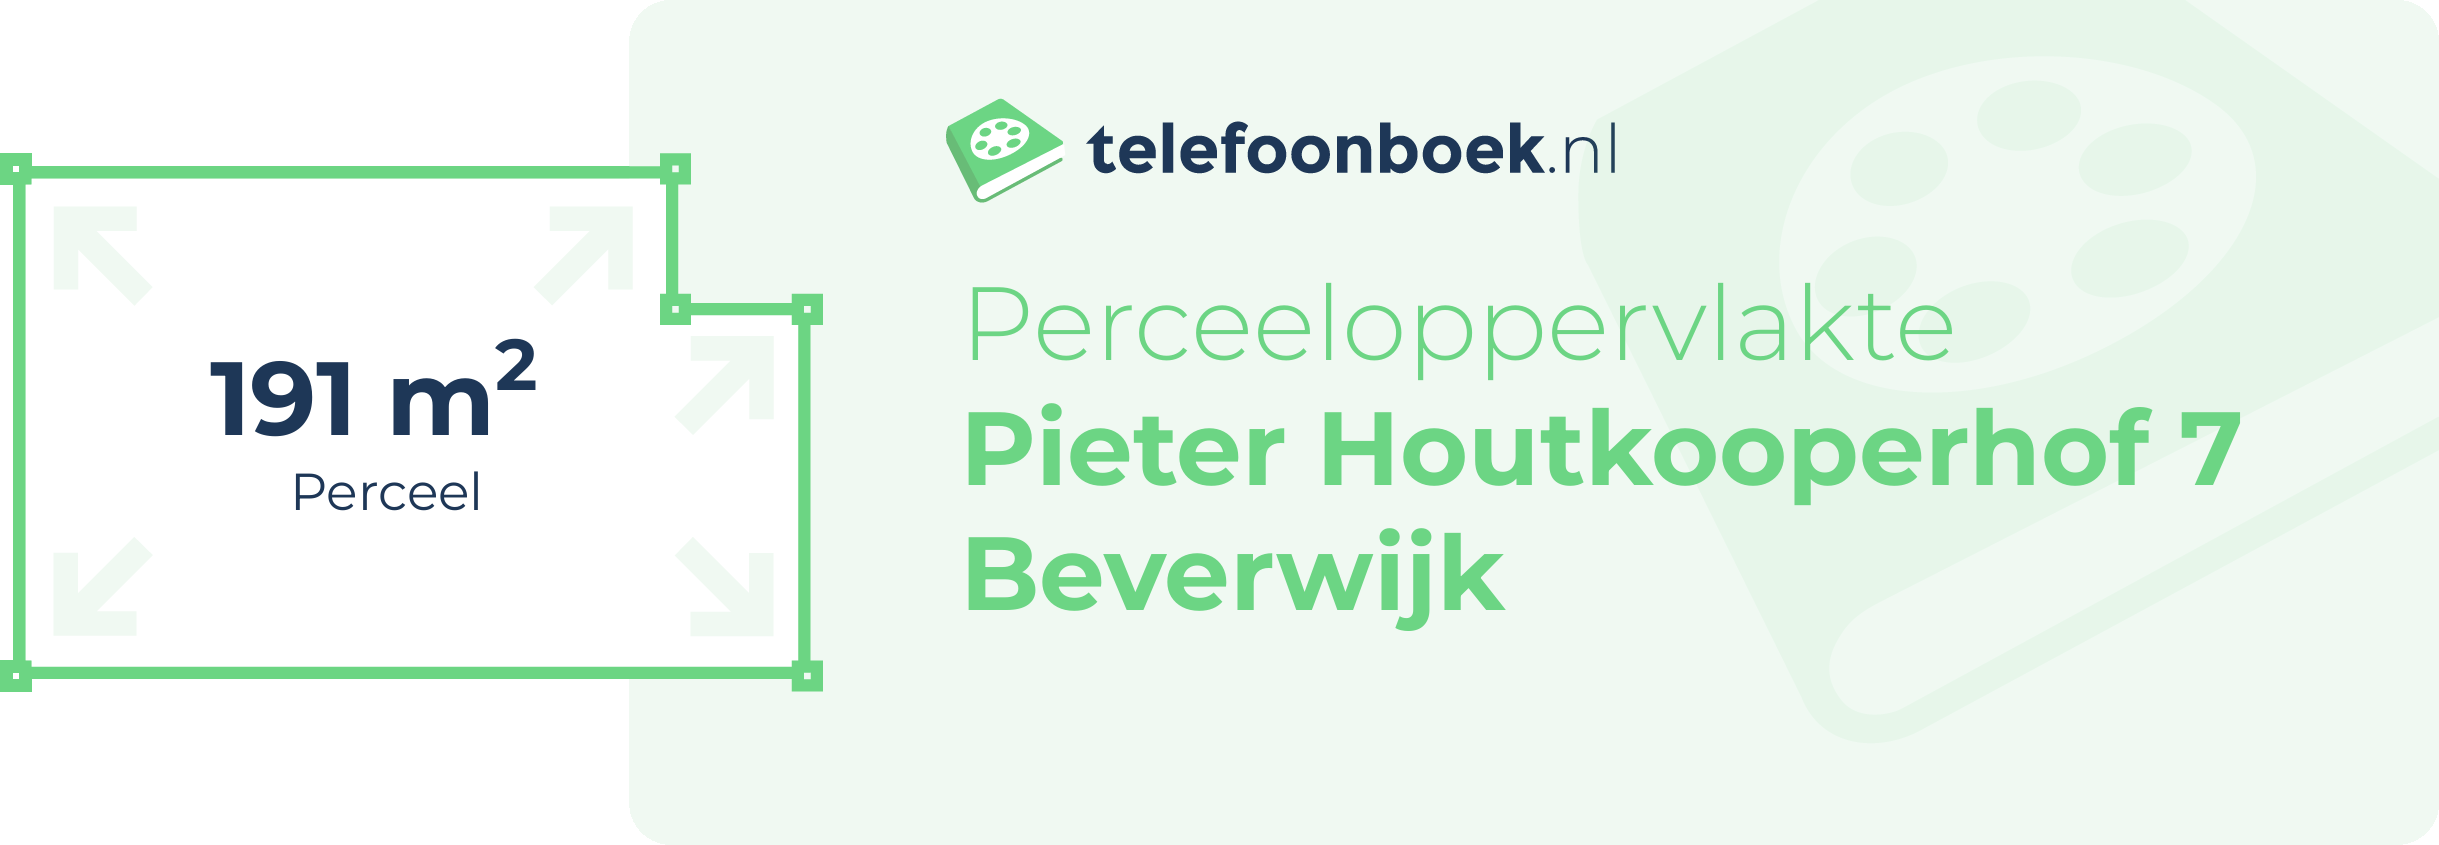 Perceeloppervlakte Pieter Houtkooperhof 7 Beverwijk